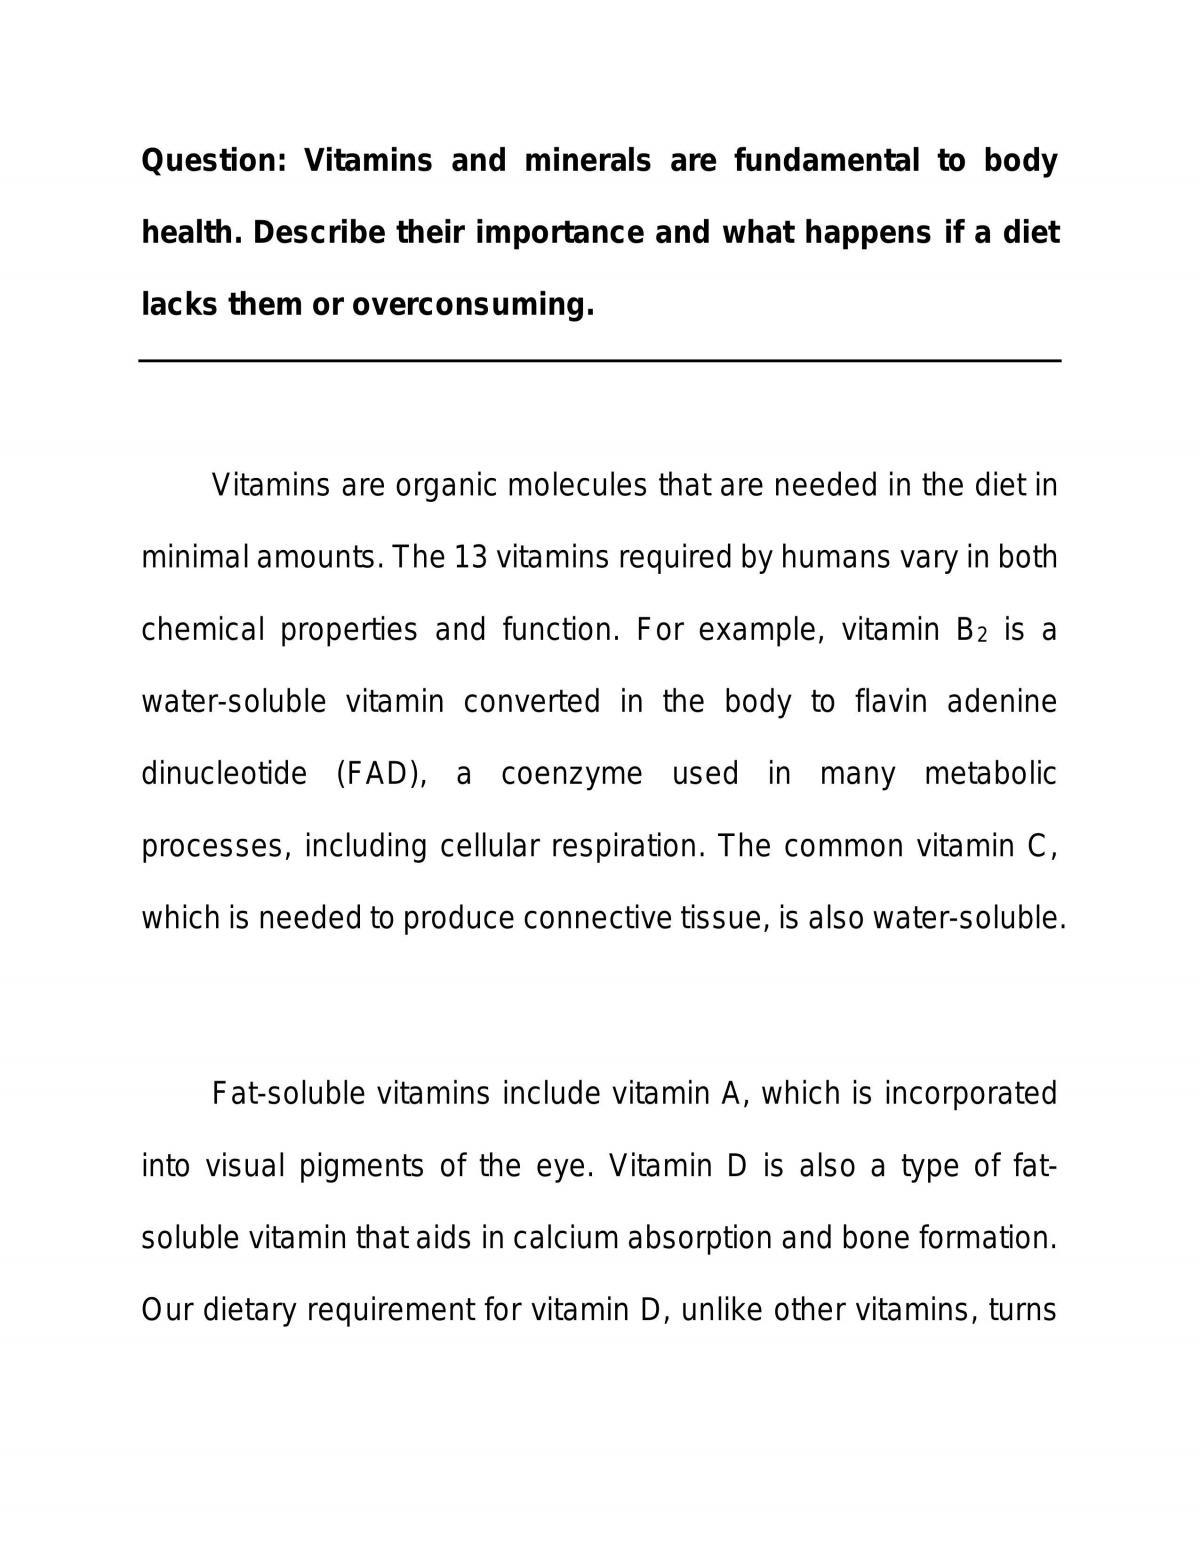 uses of vitamins essay